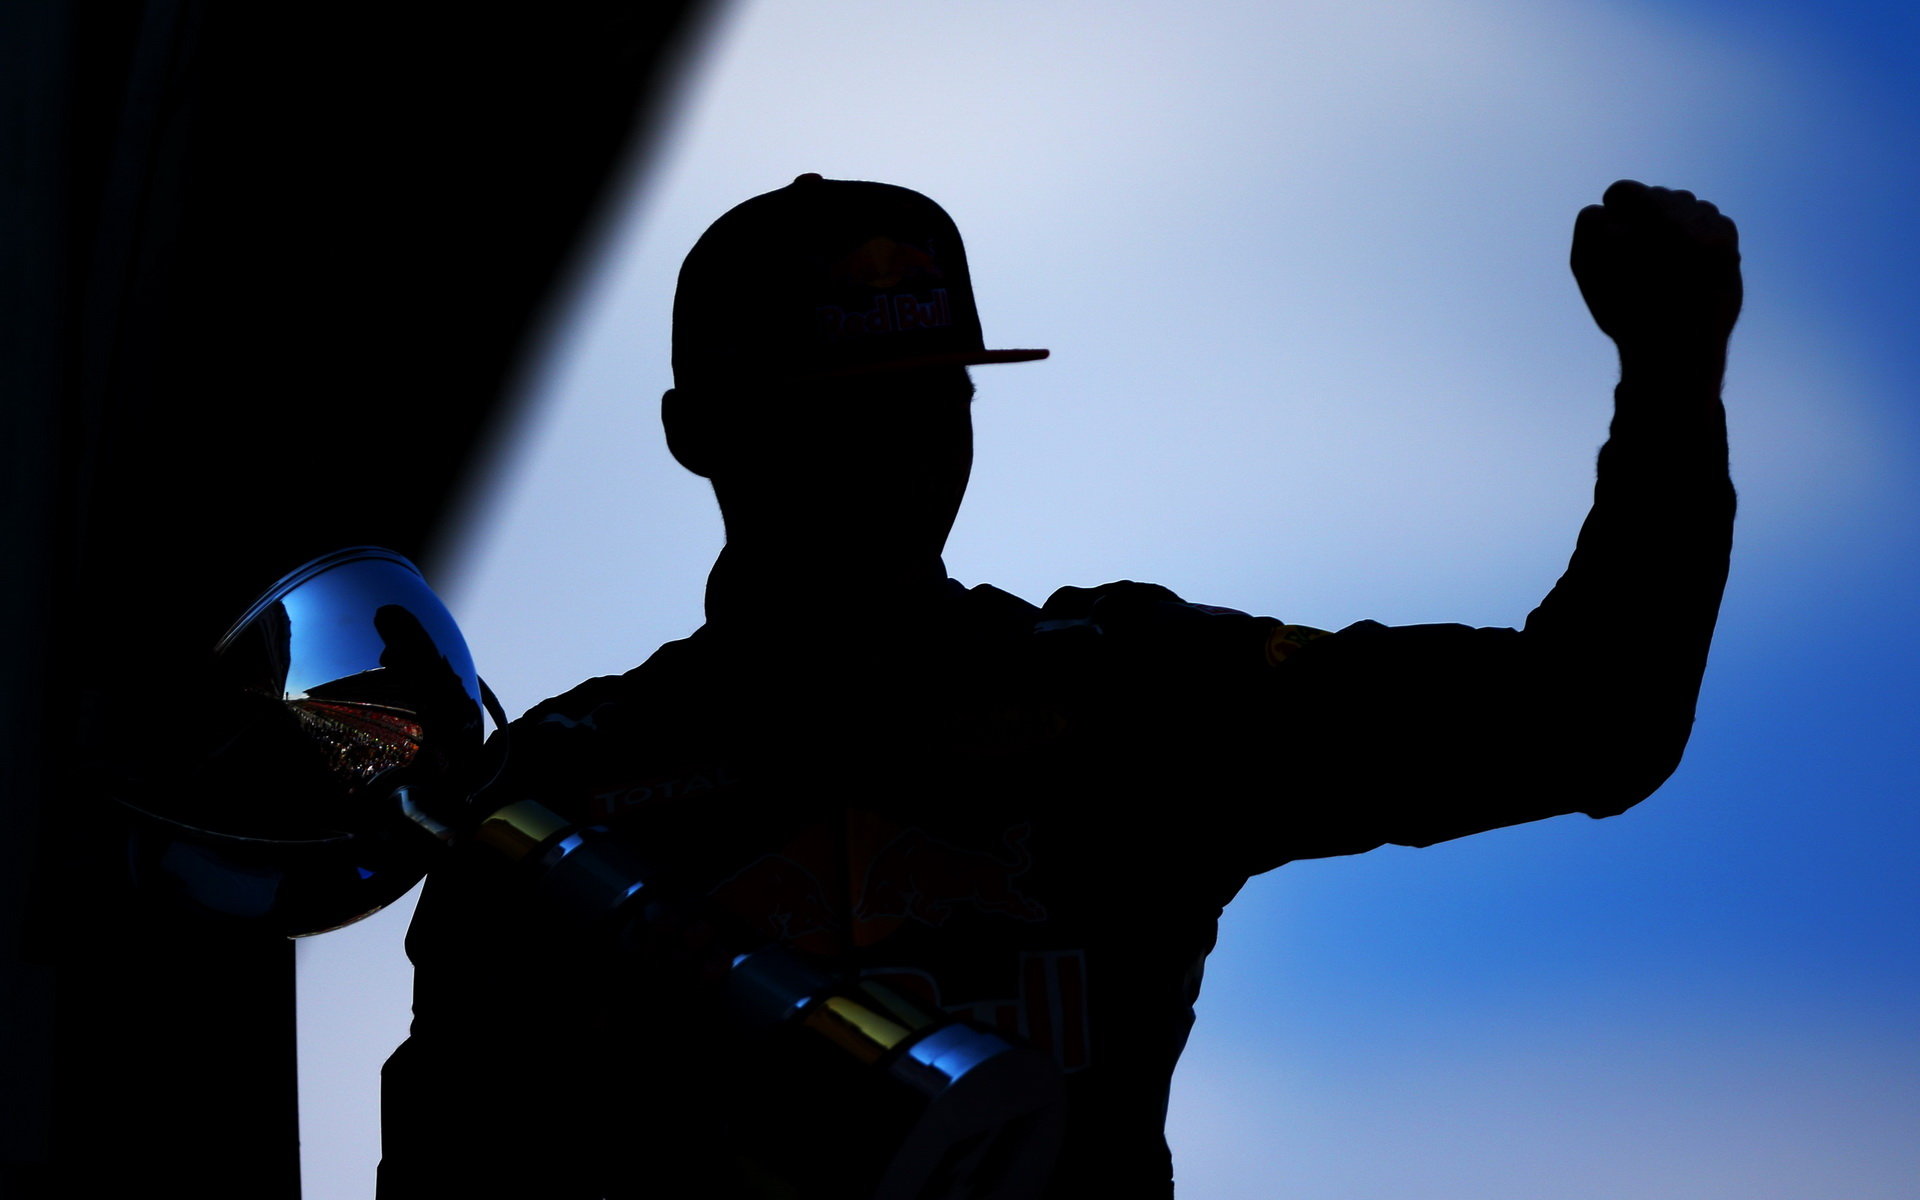 Max Verstappen, nejmladší vítěz Formule 1 v Barceloně